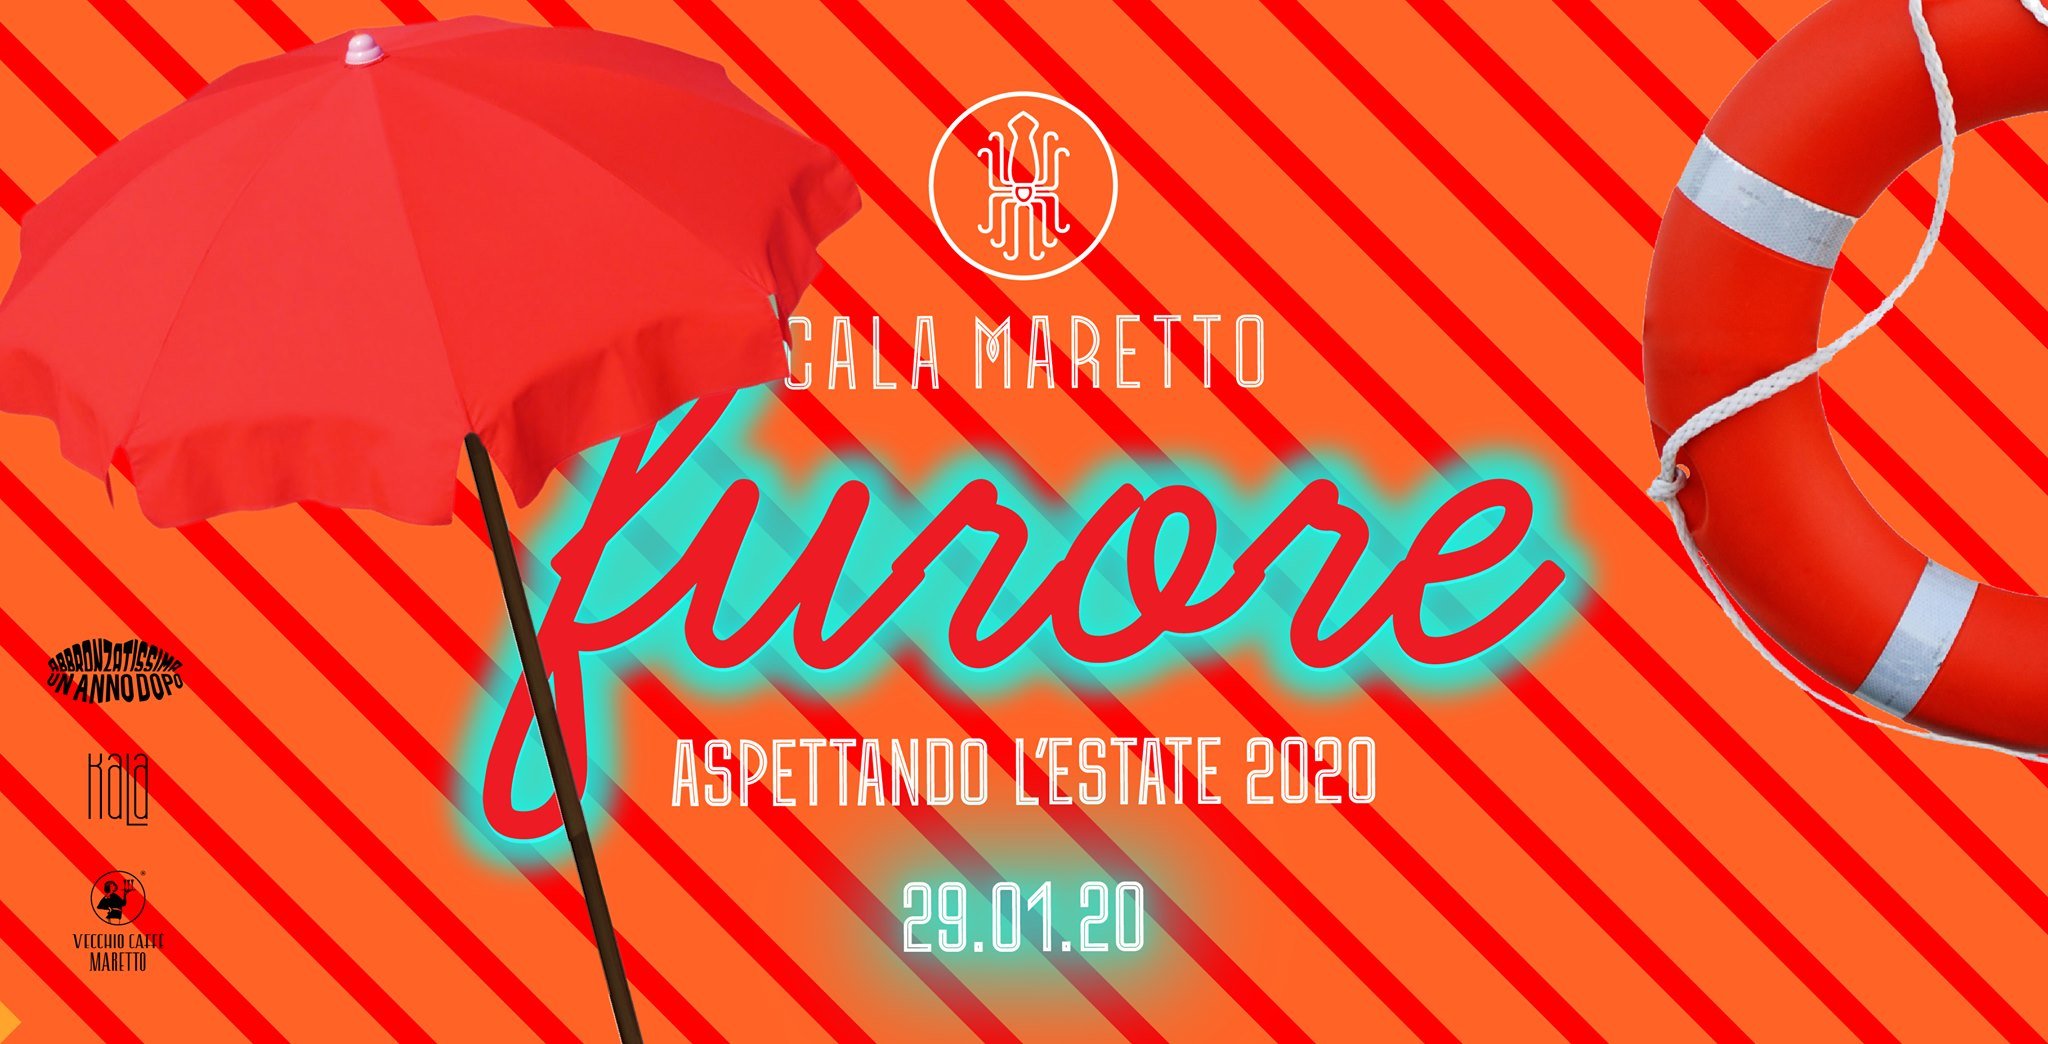 Cala Maretto Civitanova Marche aspettando estate 2020